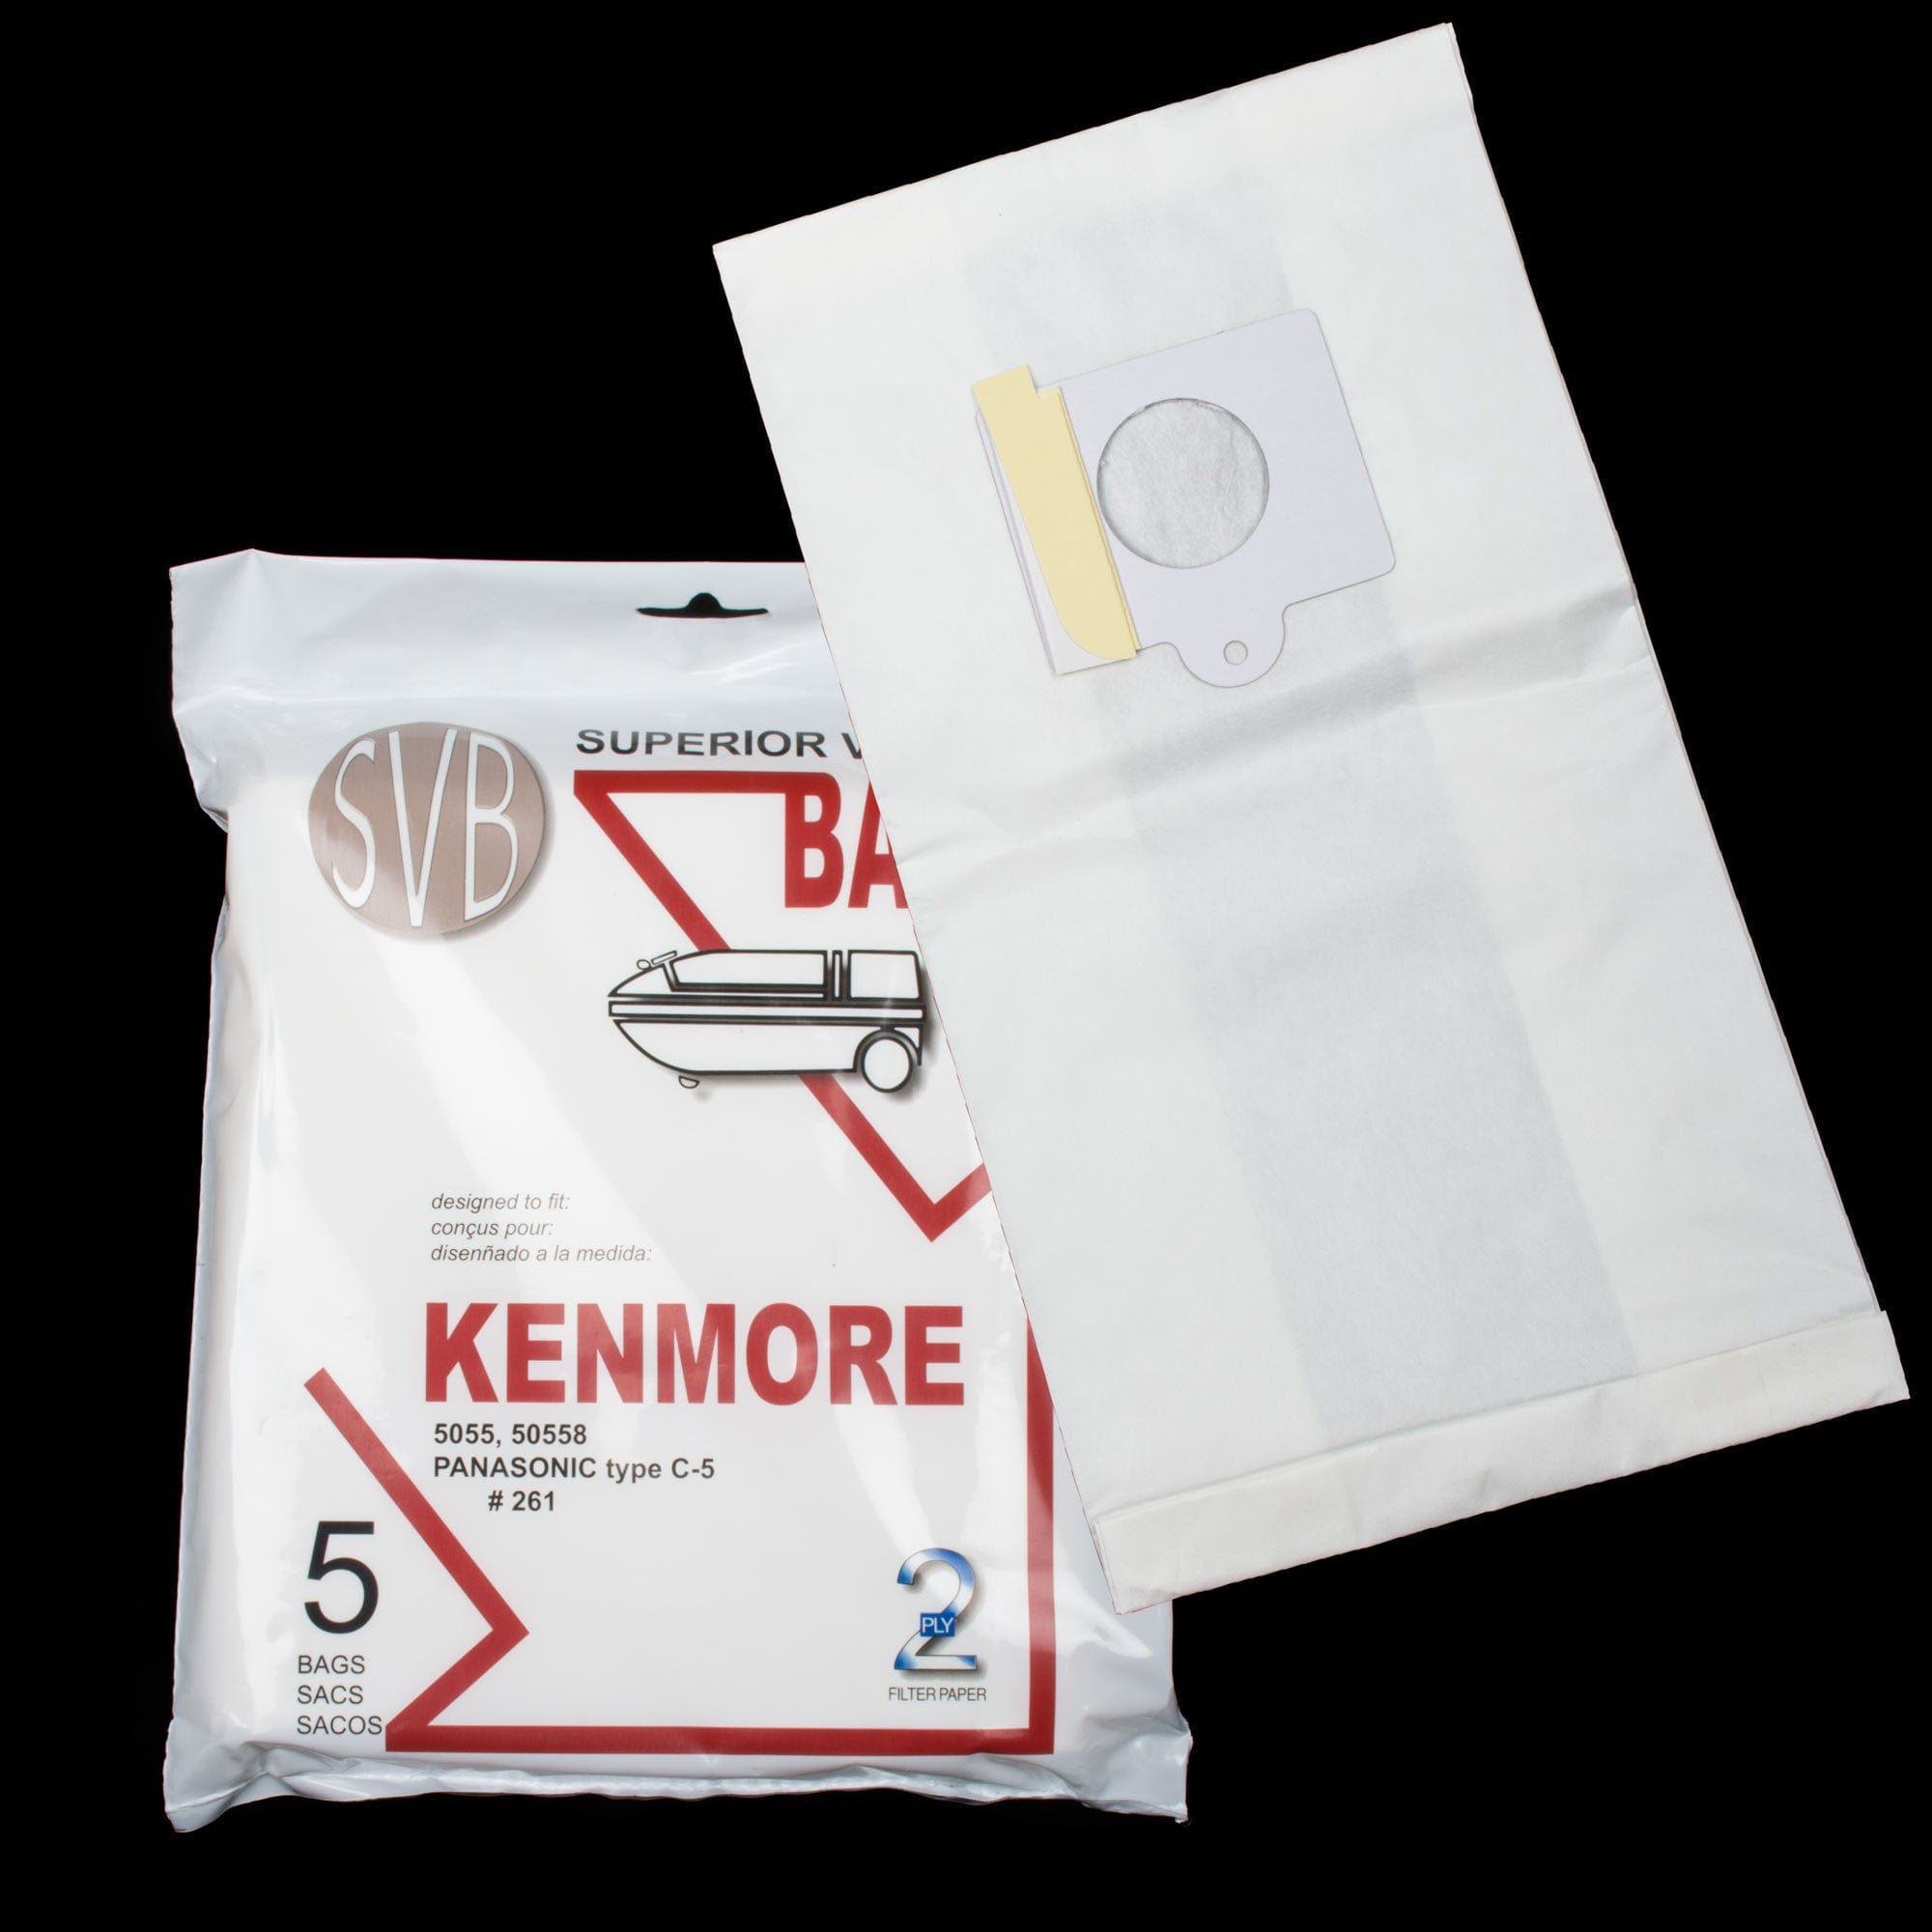 Kenmore & Panasonic Vacuum Bags | 5 Pack | BA261 Our Most Popular Bag